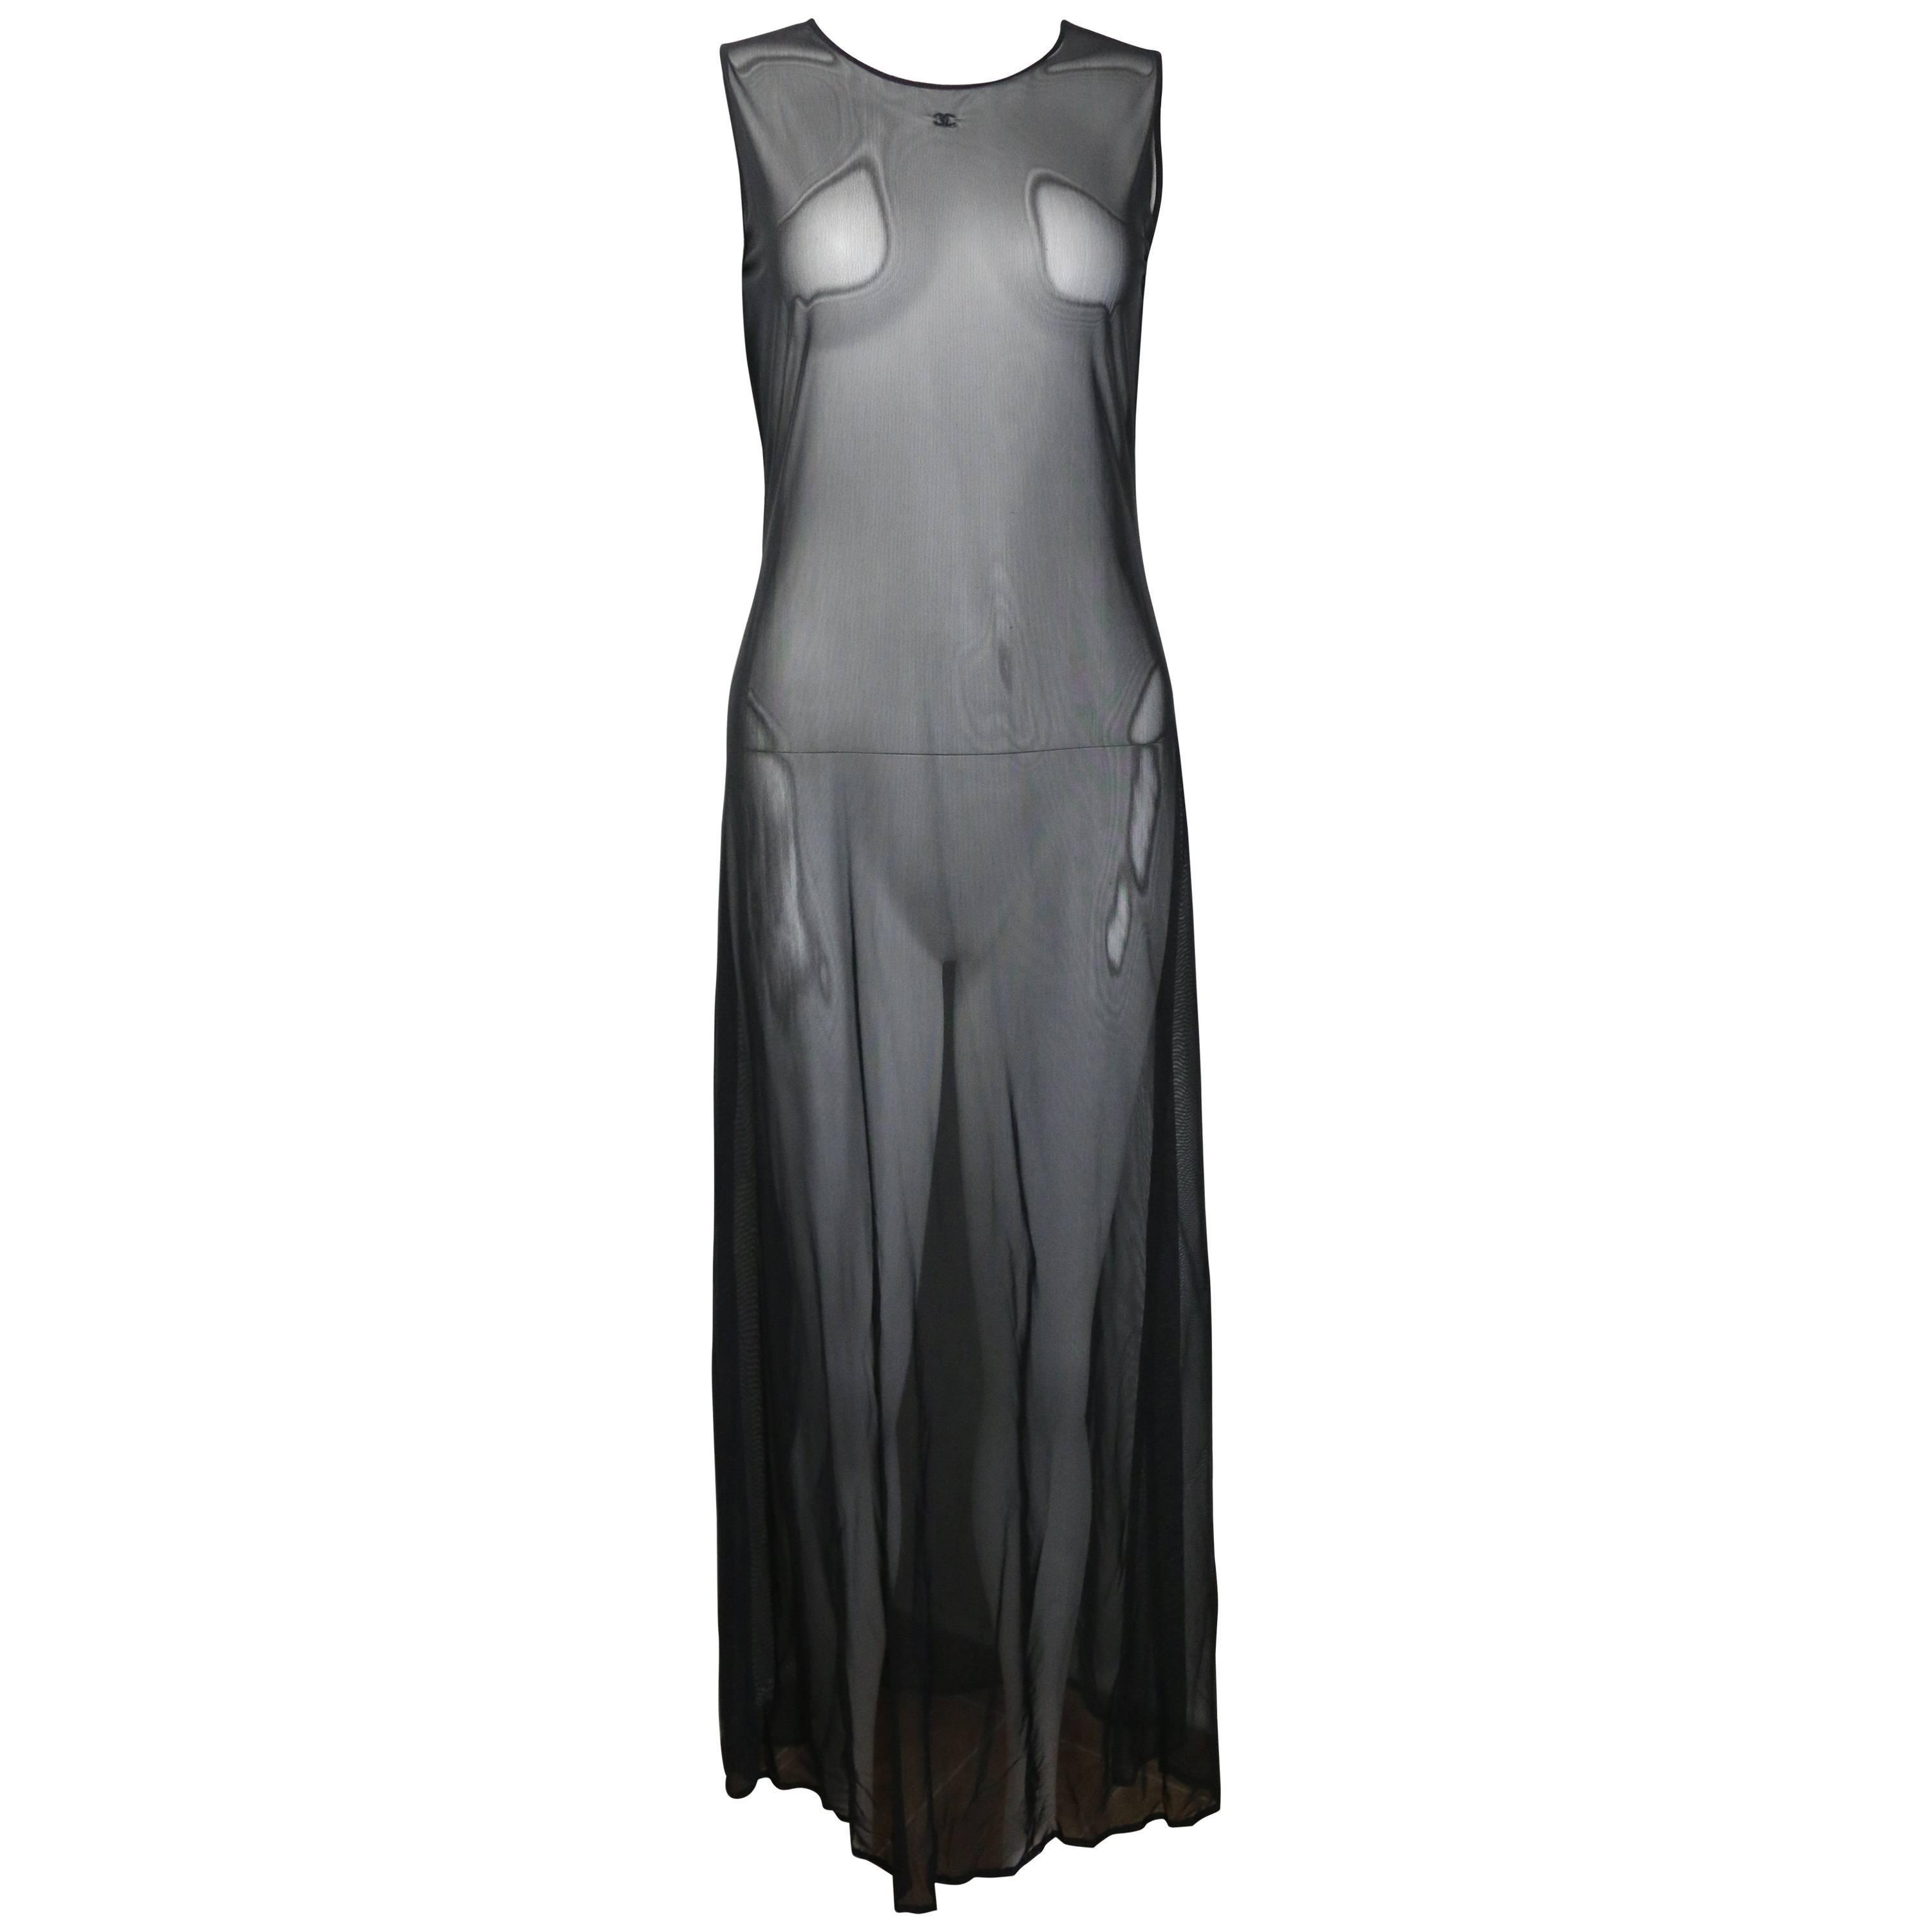 - Vintage Chanel schwarzes durchsichtiges Kleid aus der 1999er Cruise Collection. Dieses Kleid ist völlig durchsichtig und der Stoff ist dehnbar und bequem.  Es ist gut zu tragen bei heißem Wetter und auch ein sehr süßes Kleid zu tragen! 

-